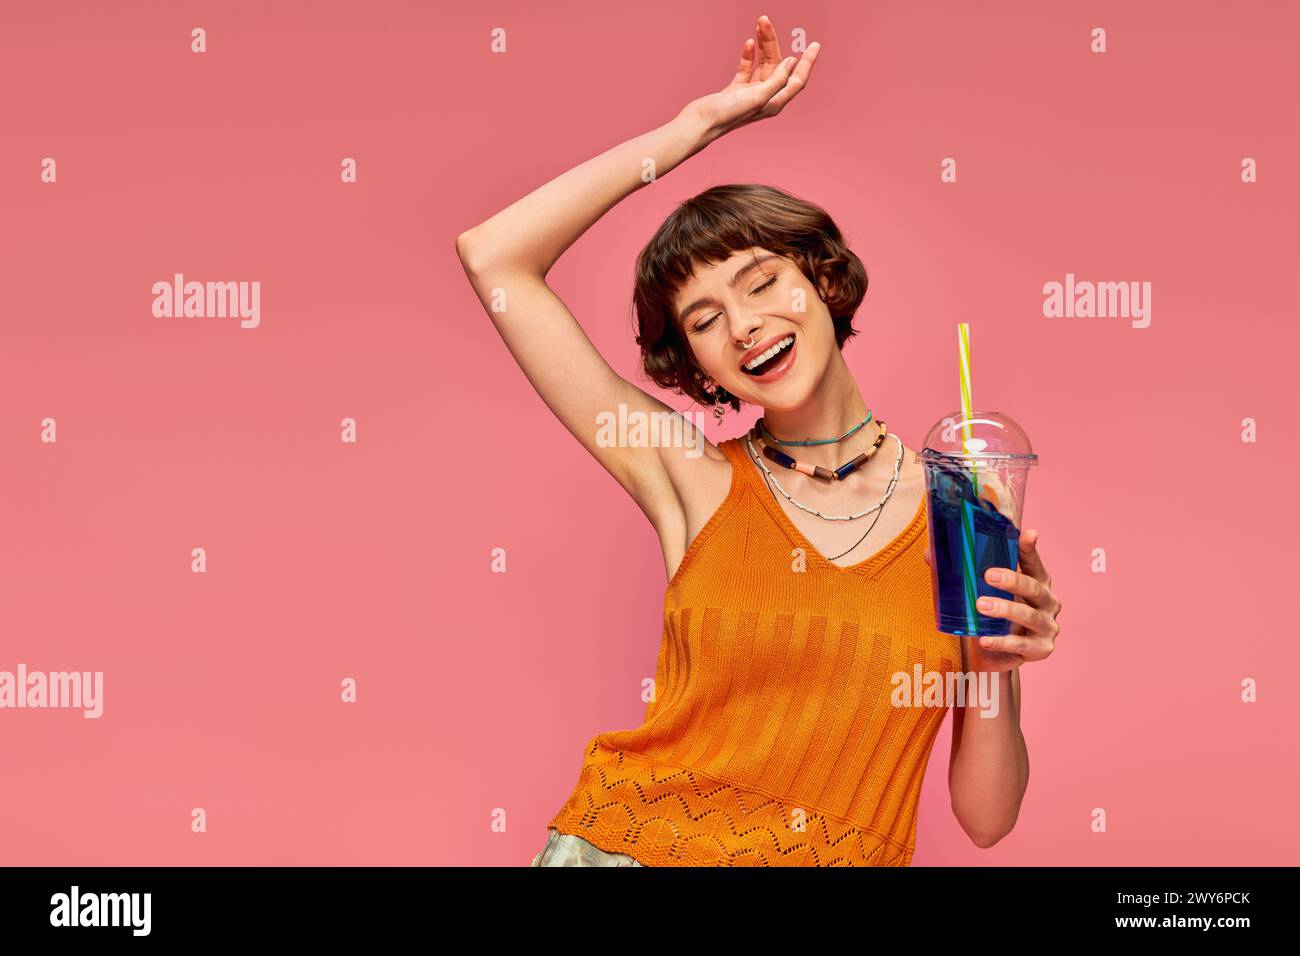 Aufgeregte junge Frau mit kurzen brünetten Haaren, die erfrischendes Sommergetränk über dem Kopf auf rosa hält Stockfoto